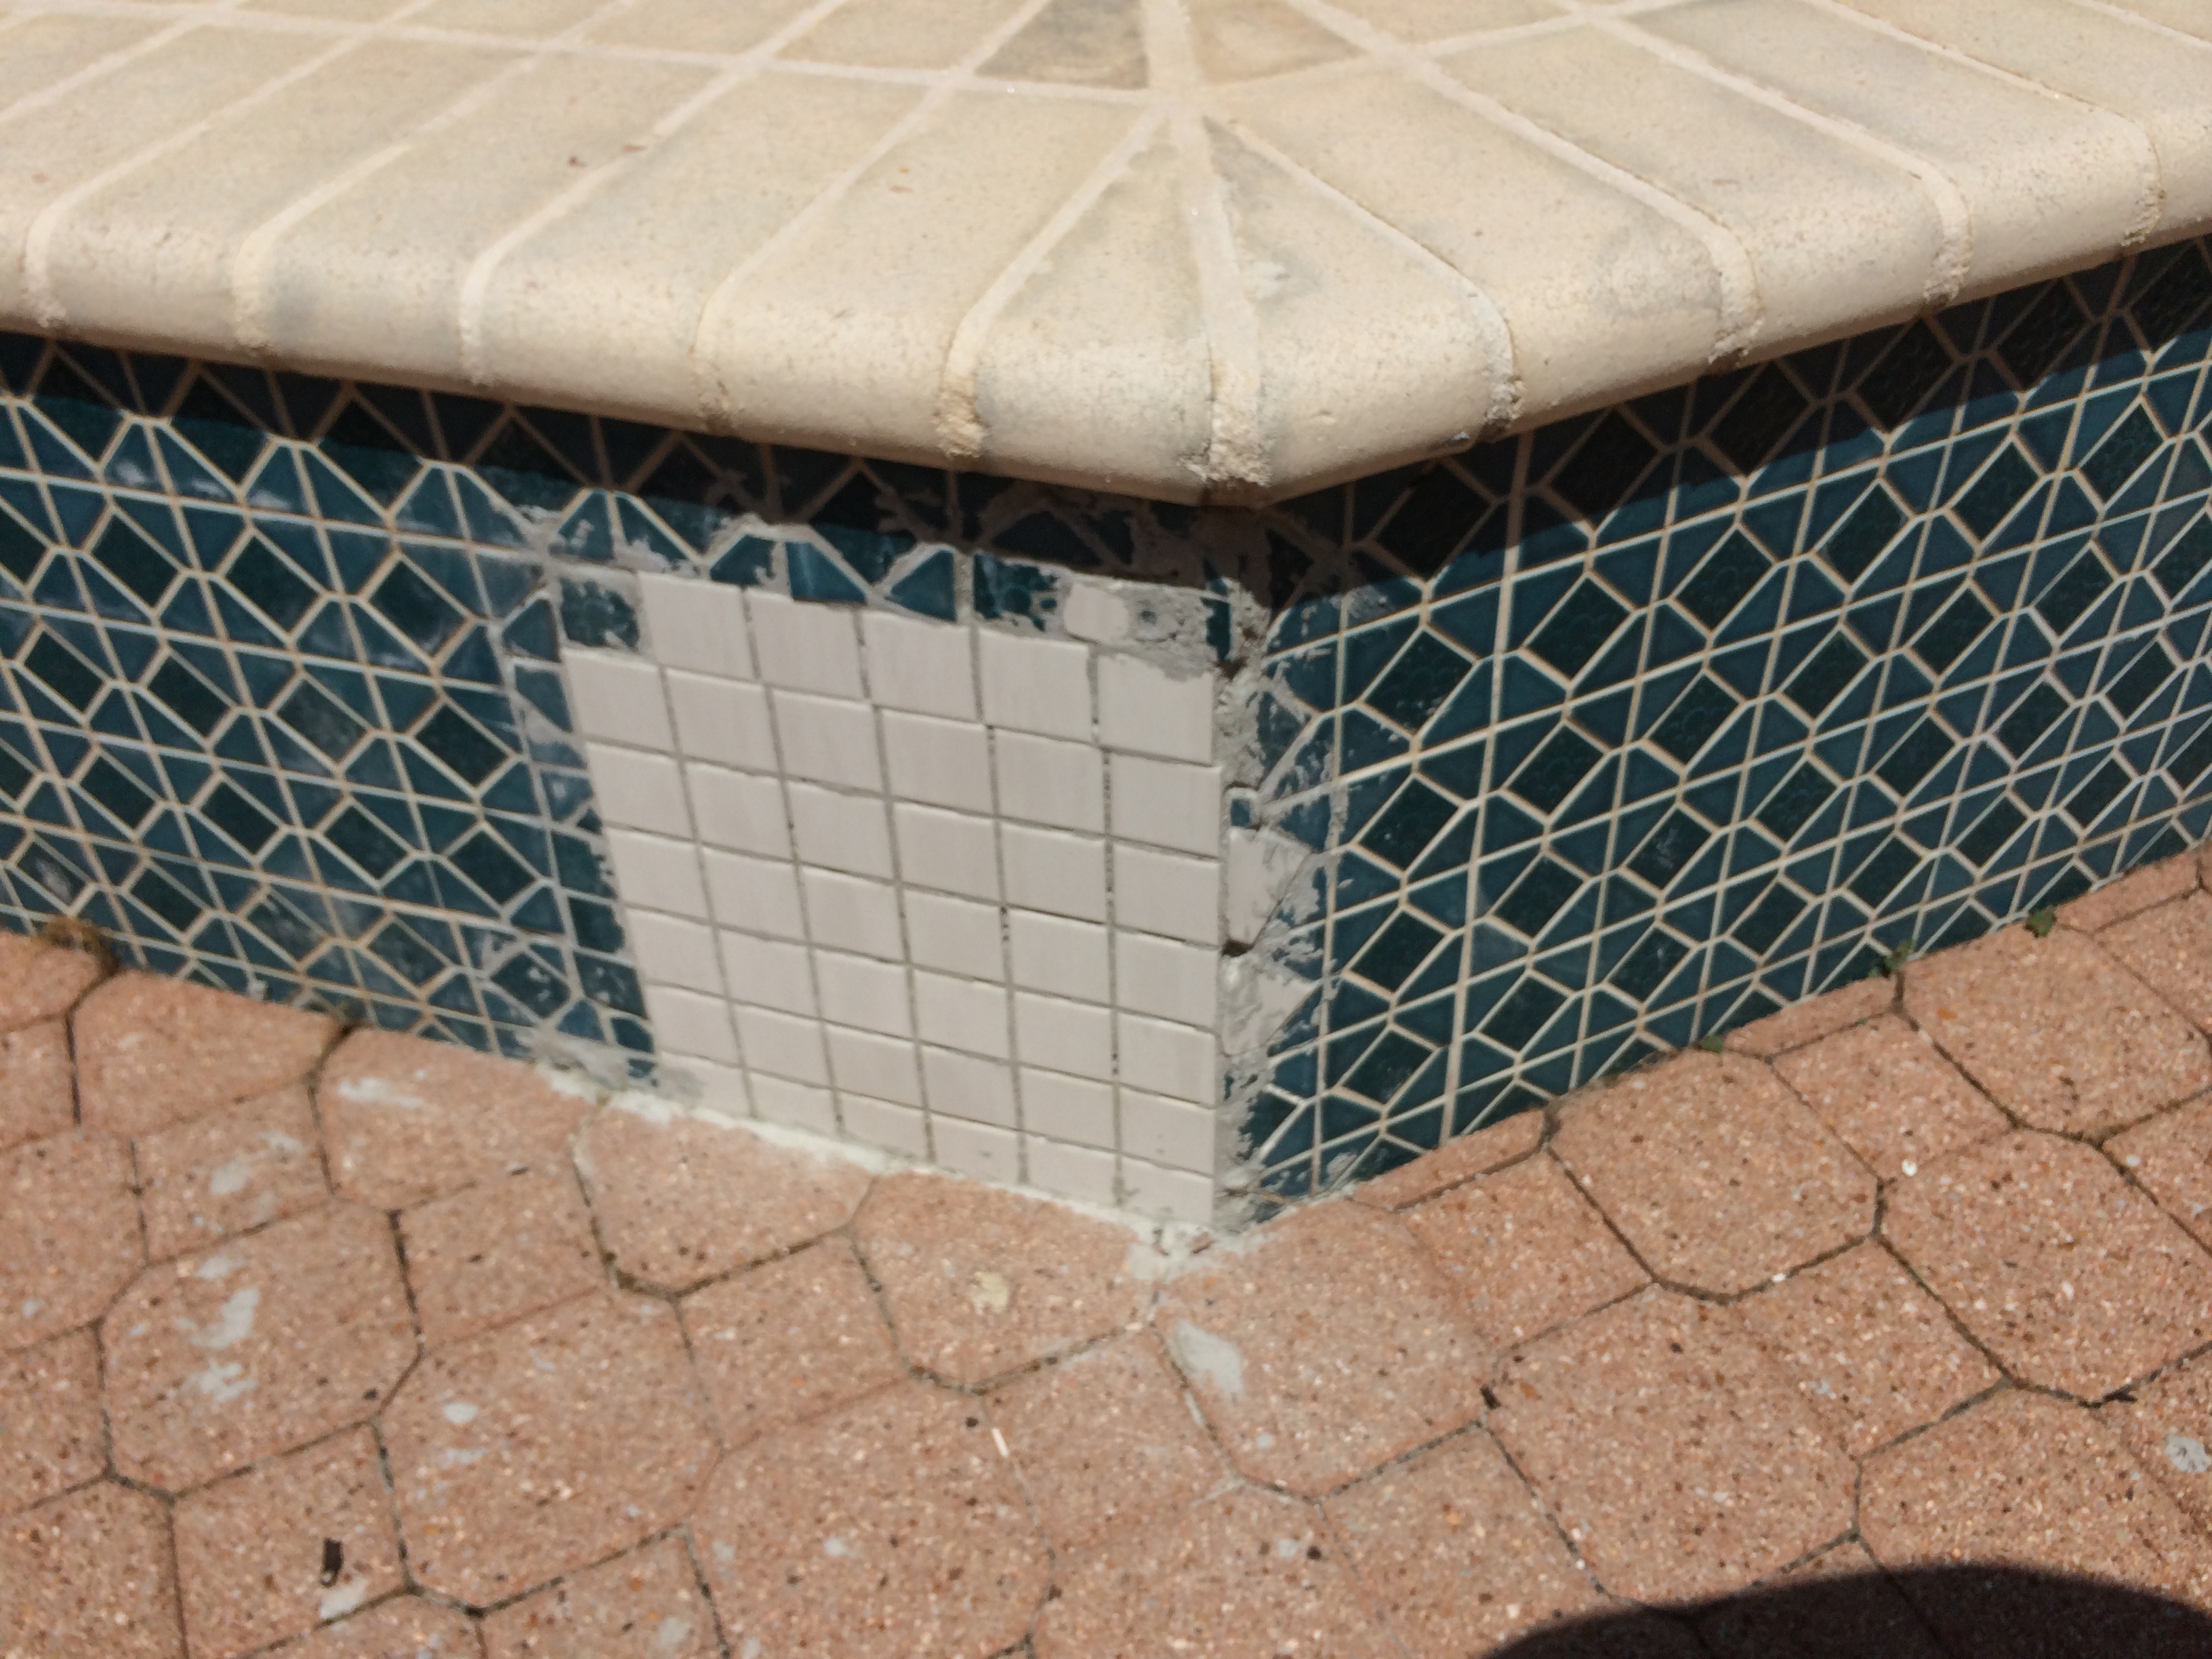 More bad pool tile repairs